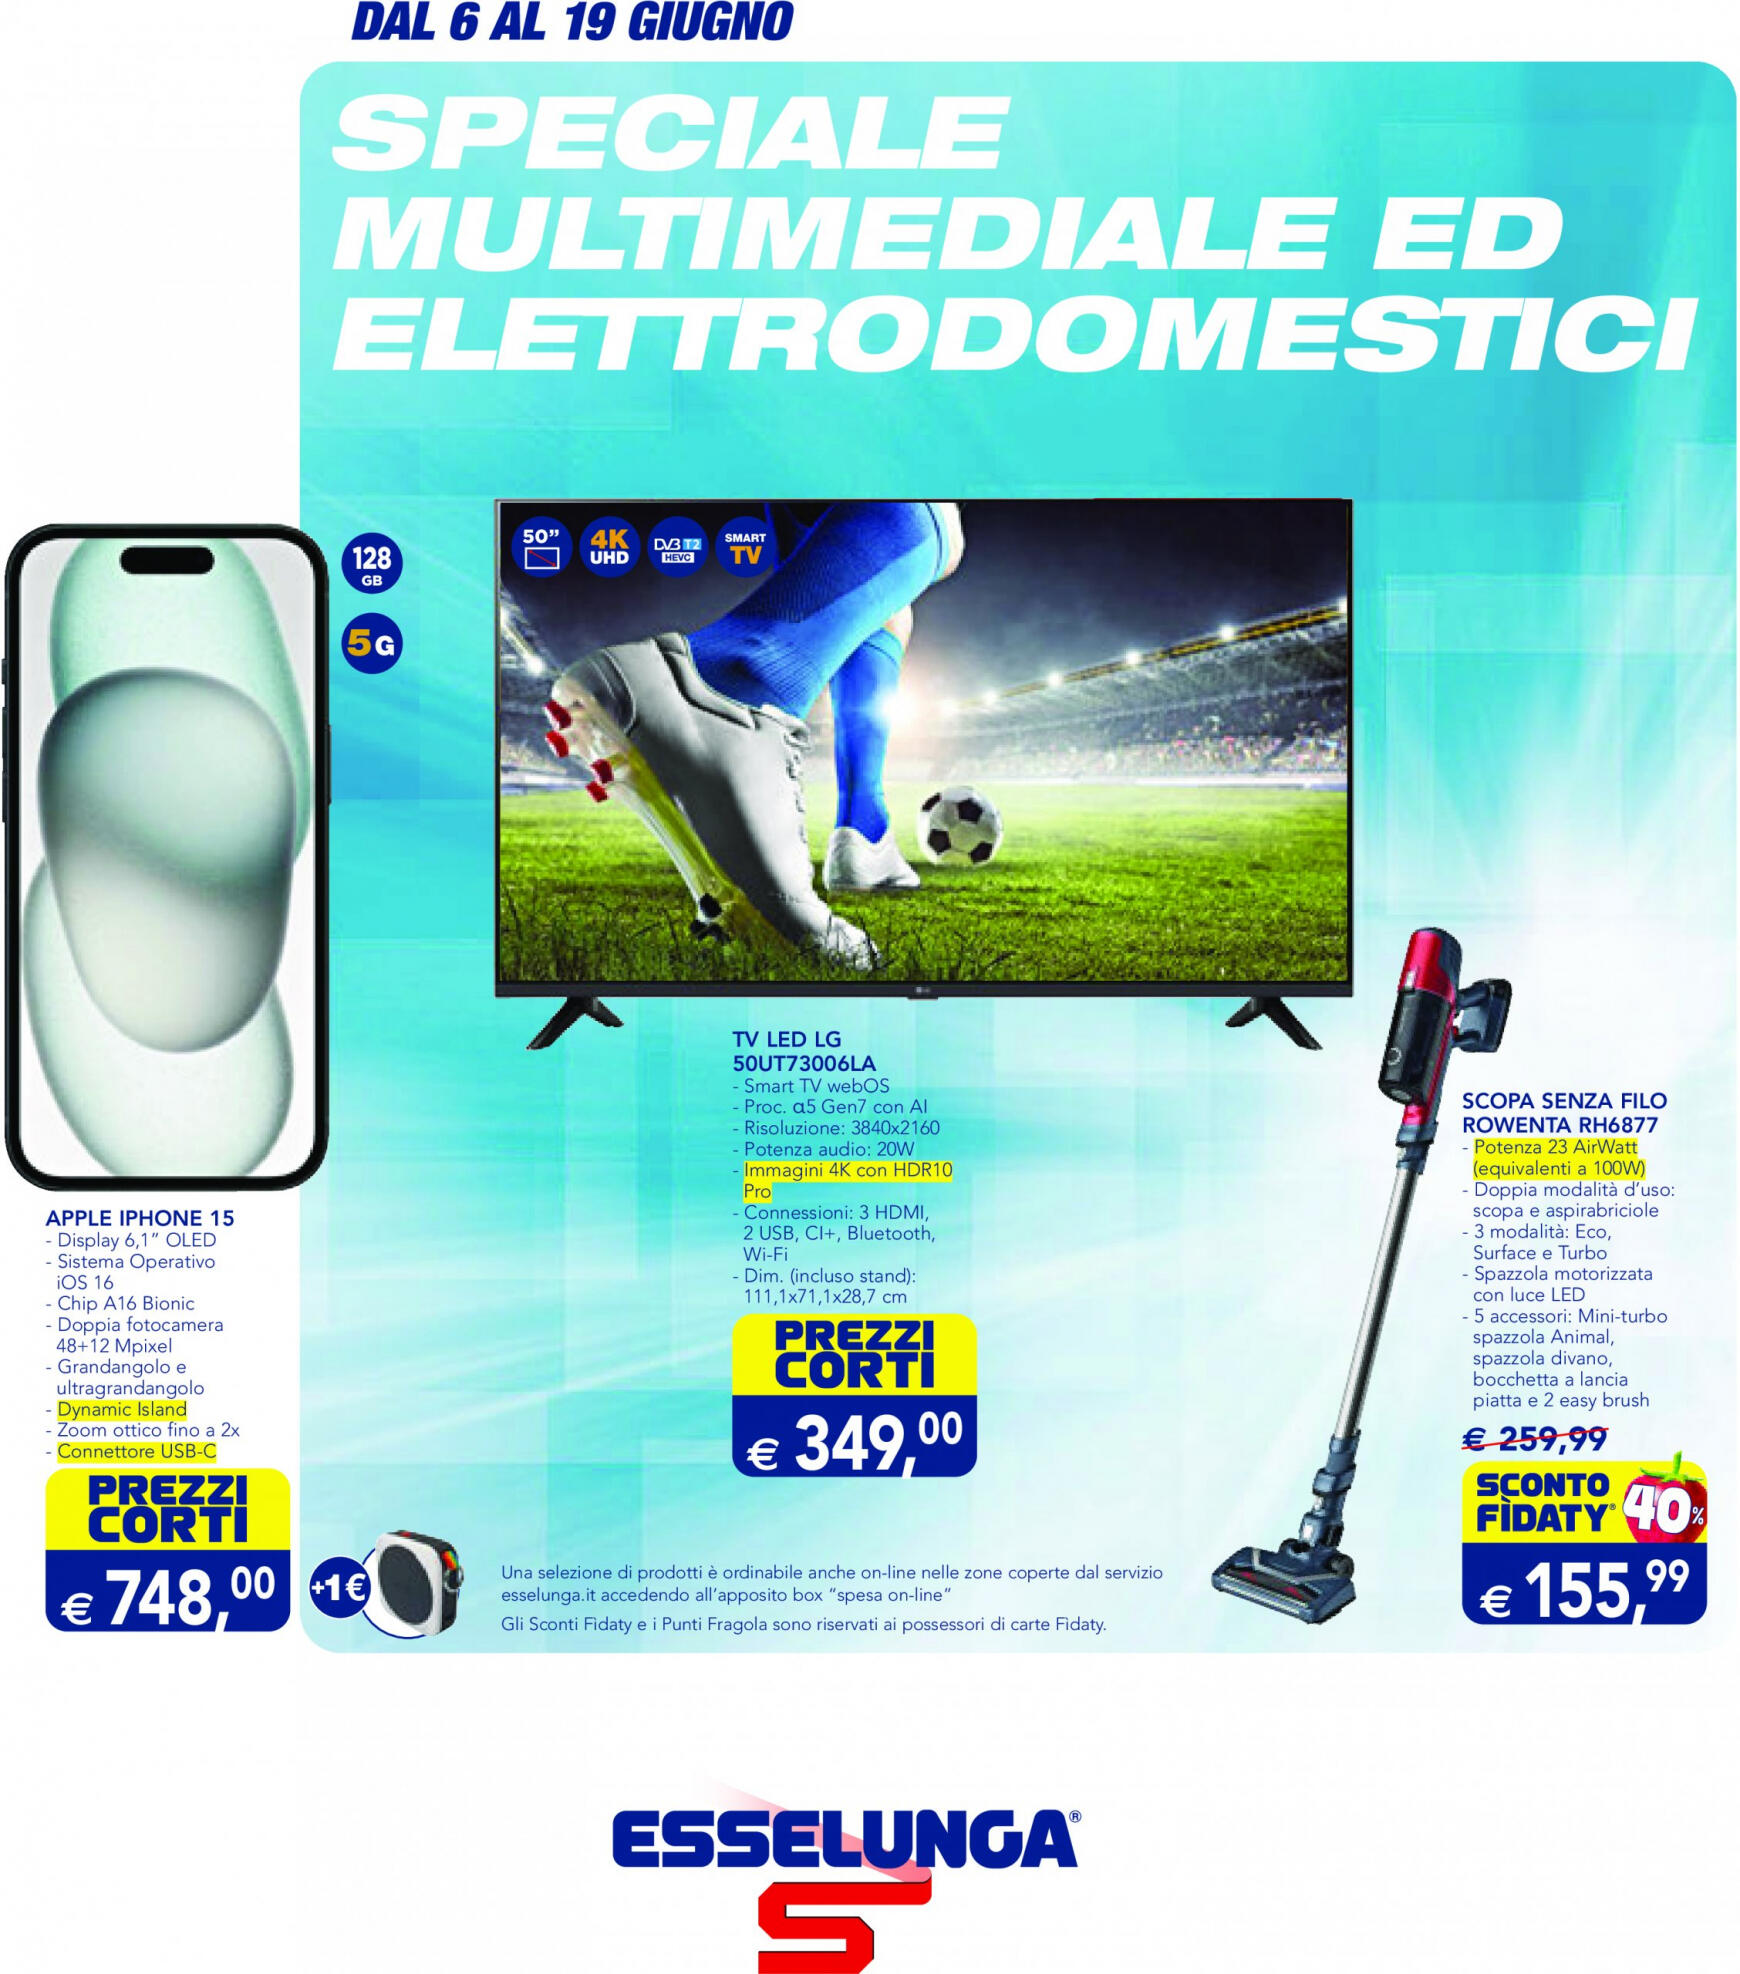 esselunga - Nuovo volantino Esselunga - Speciale Multimediale ed Elettrodomestici 06.06. - 19.06. - page: 1